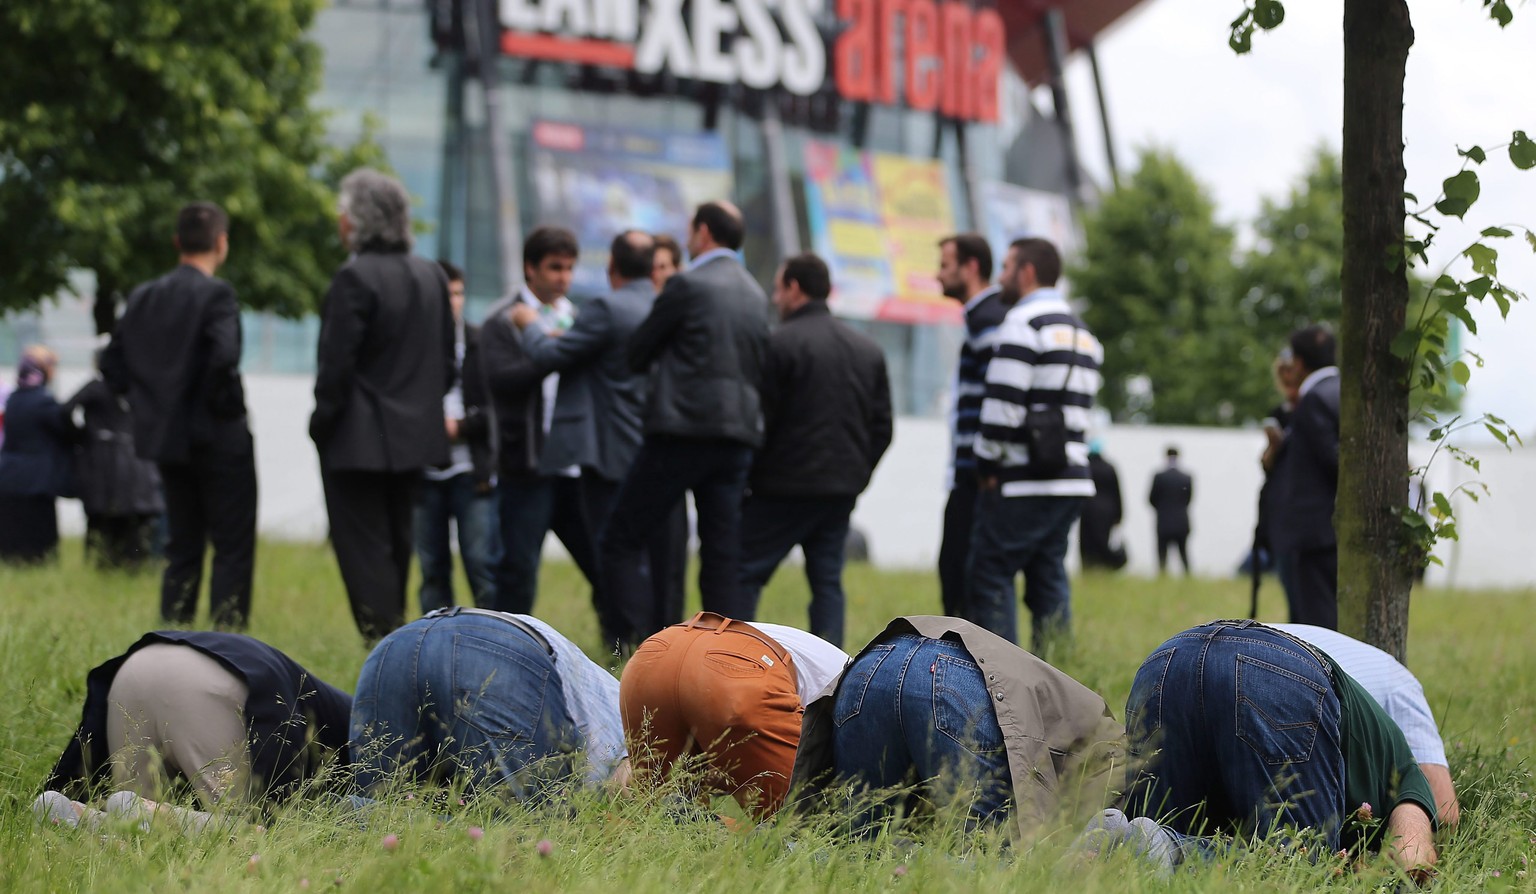 Anhänger von Erdogan stehen vor der Lanxess-Arena, während andere beten.&nbsp;